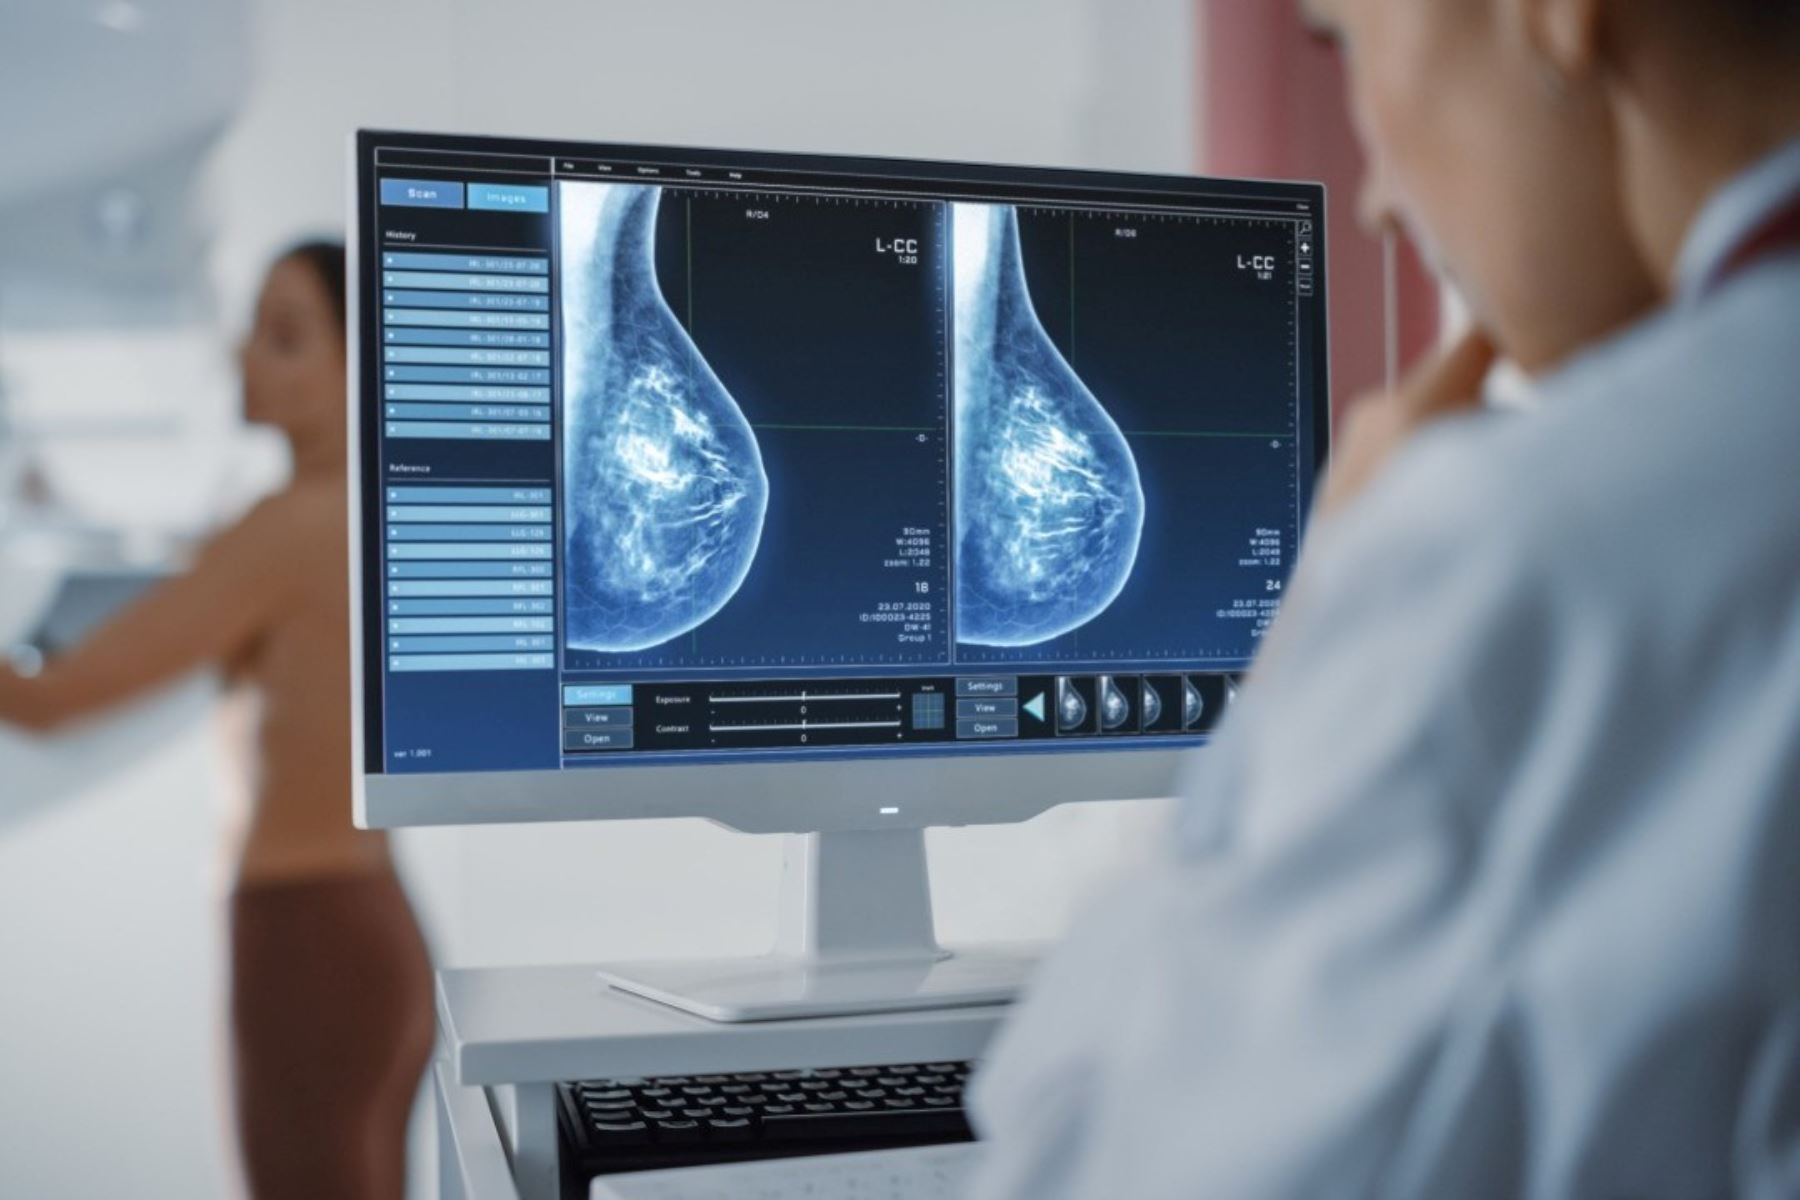 Especialistas recomiendan pruebas periódicas para la detección temprana del cáncer de mama. Foto: Cortesía Semáforo Oncológico/Difusión.